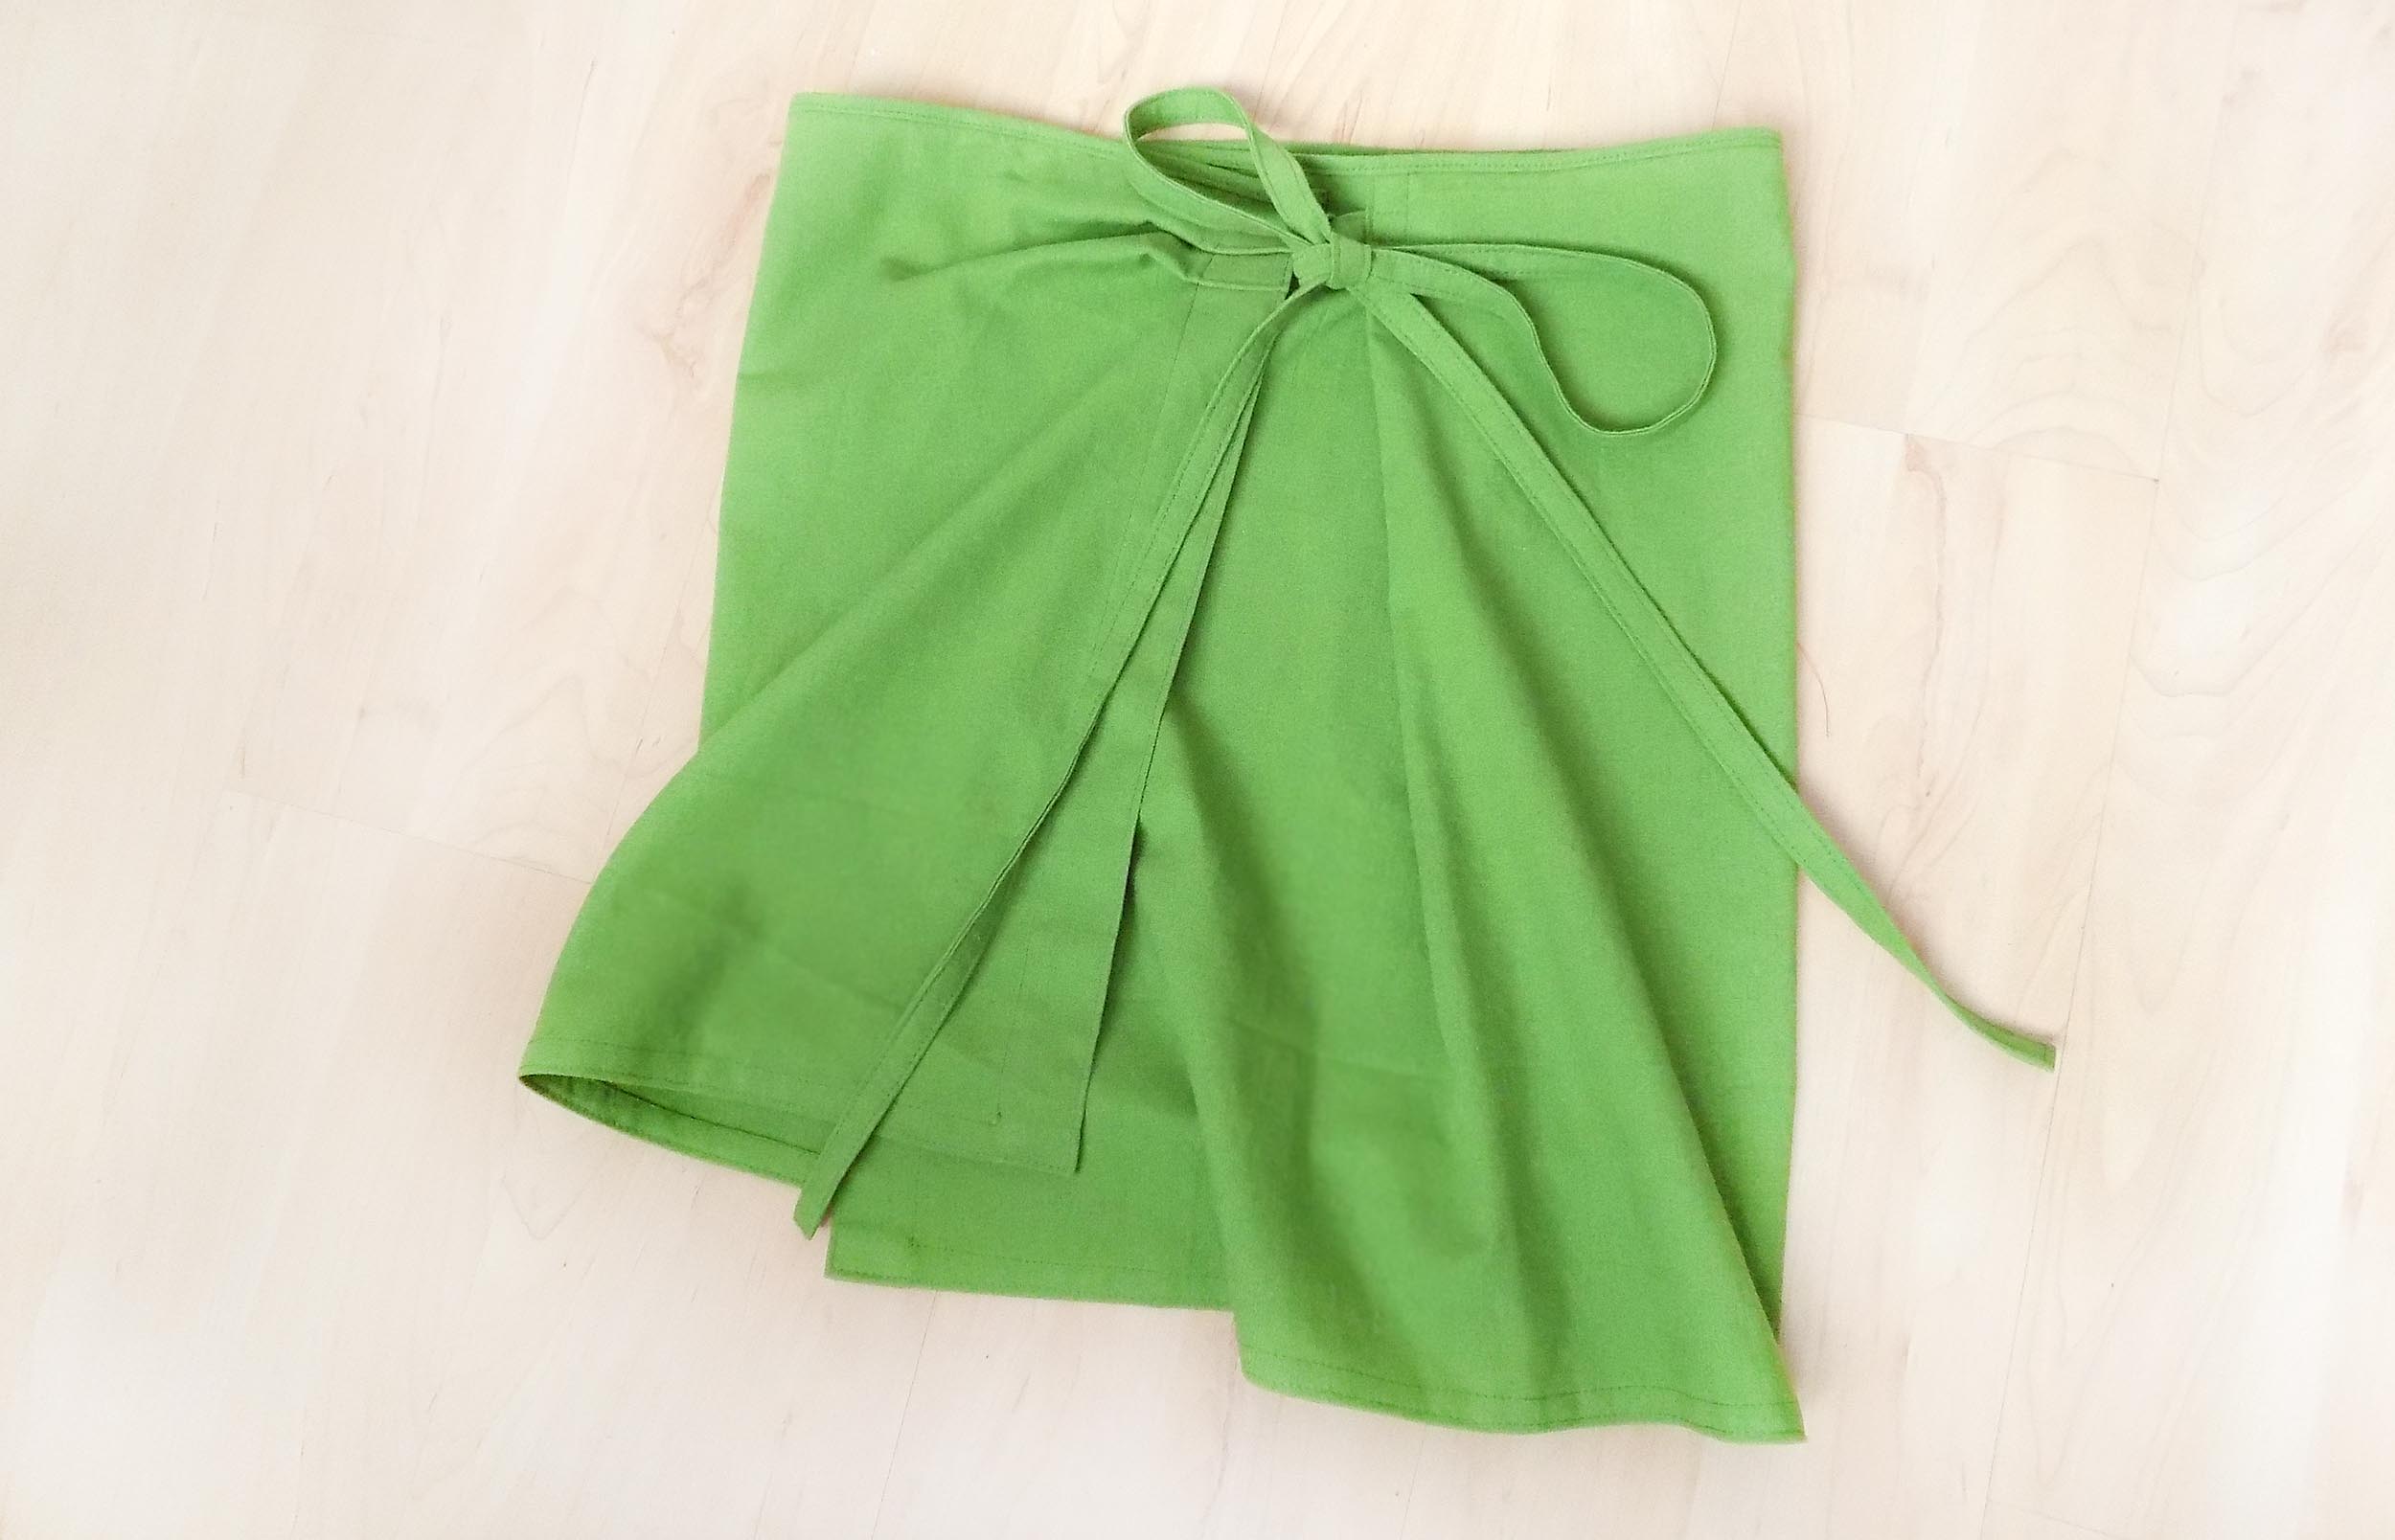 Как сшить юбку с запахом - легкие пошаговые схемы выкройки юбки для начинающих